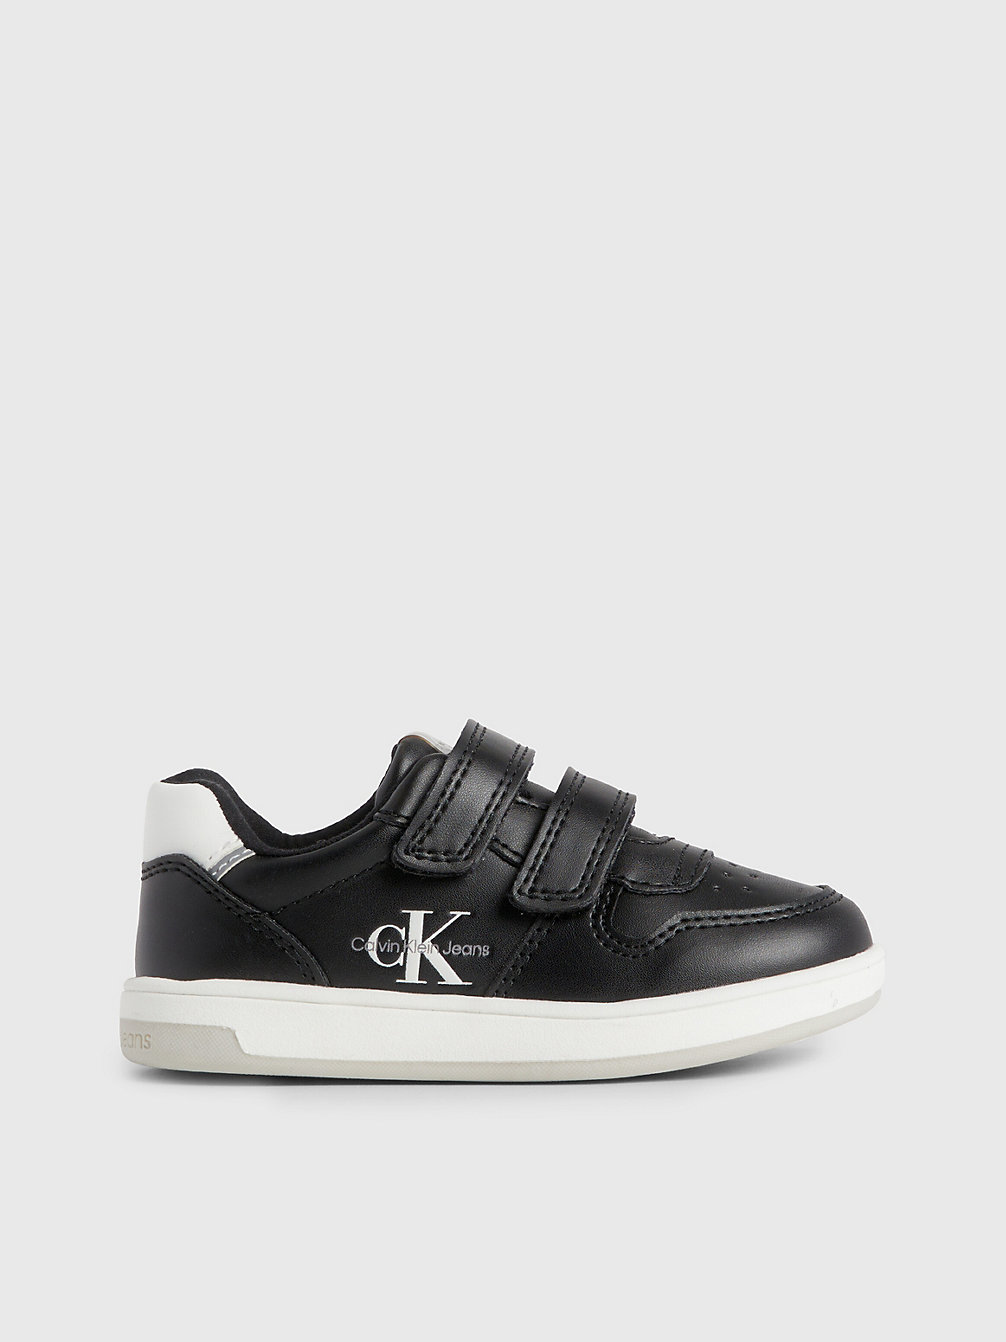 BLACK > Sneakers Mit Klettverschluss Für Kleinkinder Und Kinder > undefined kids unisex - Calvin Klein